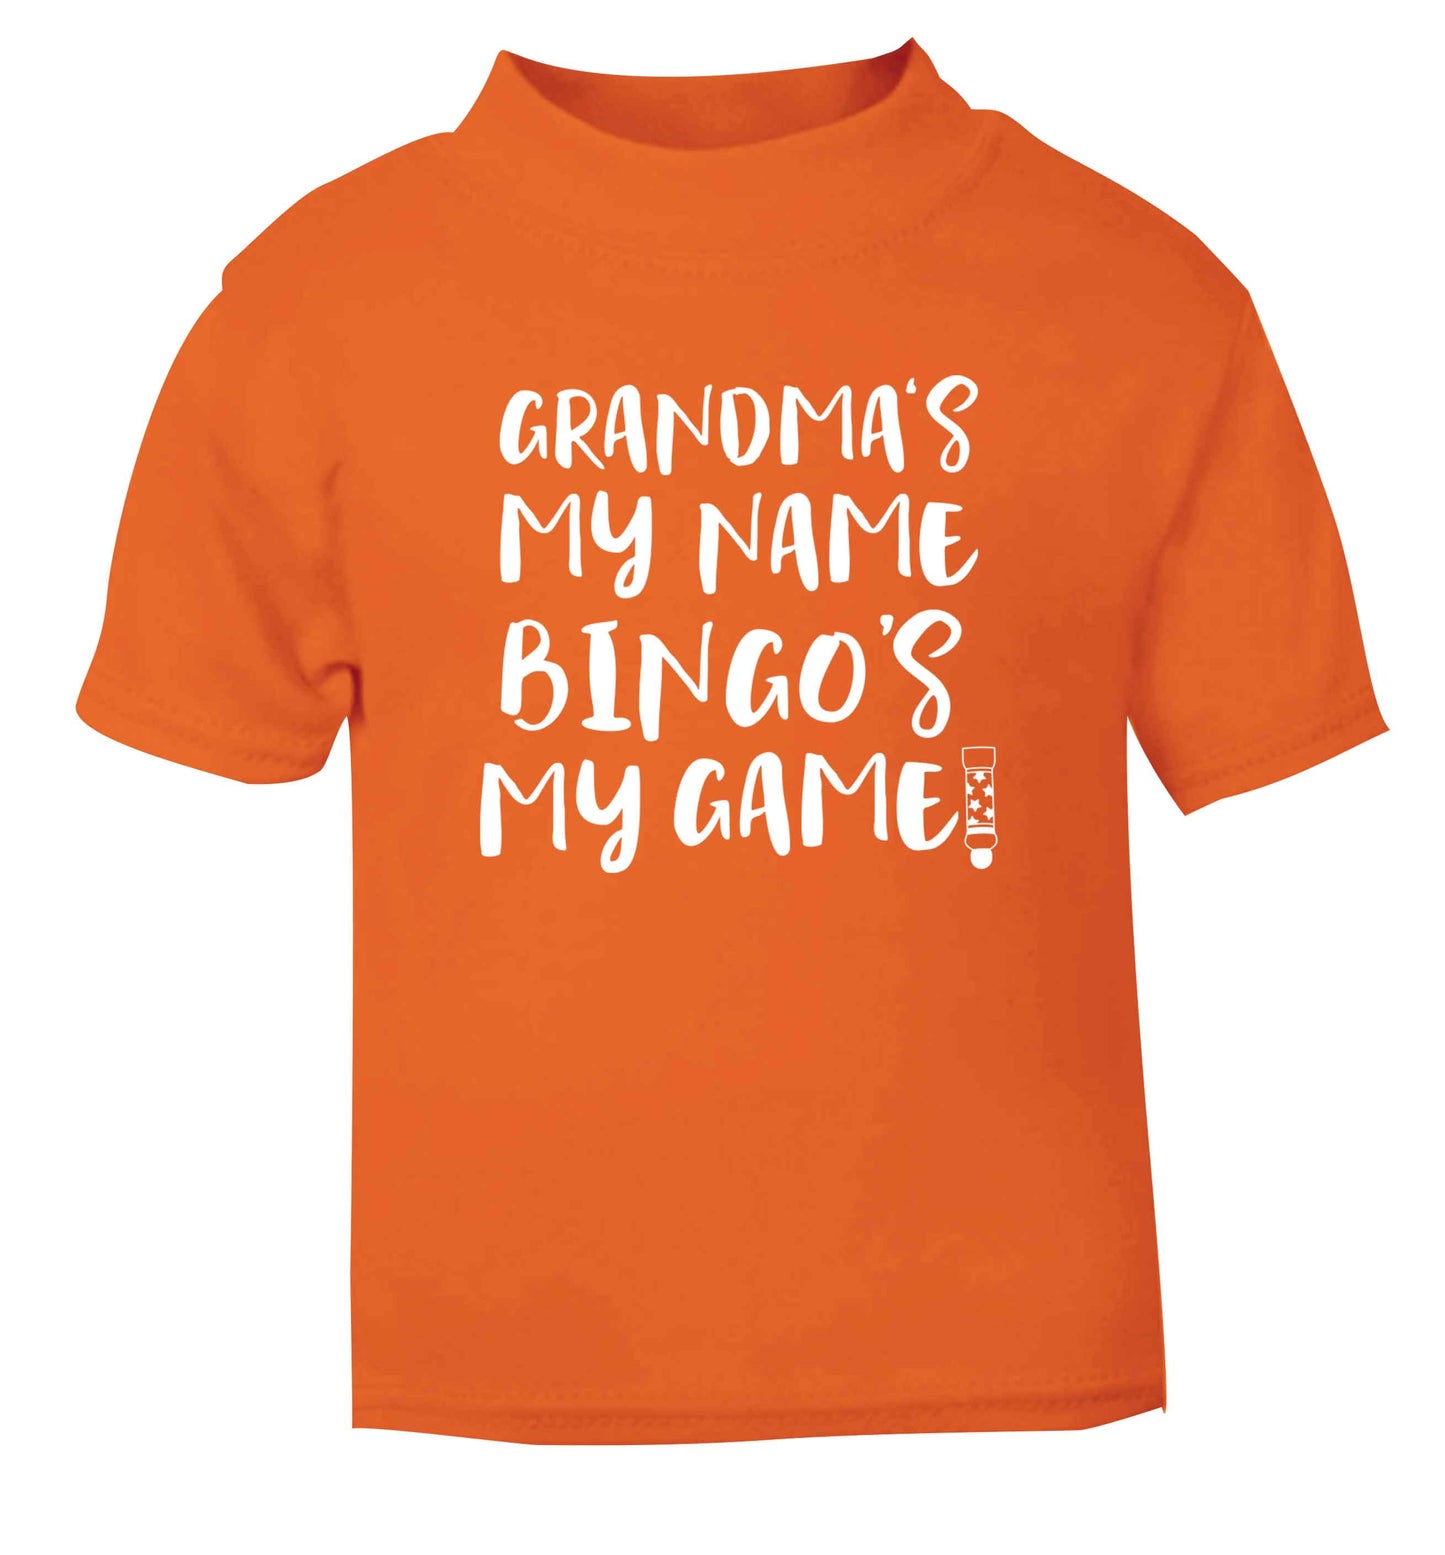 Grandma's my name bingo's my game! orange Baby Toddler Tshirt 2 Years